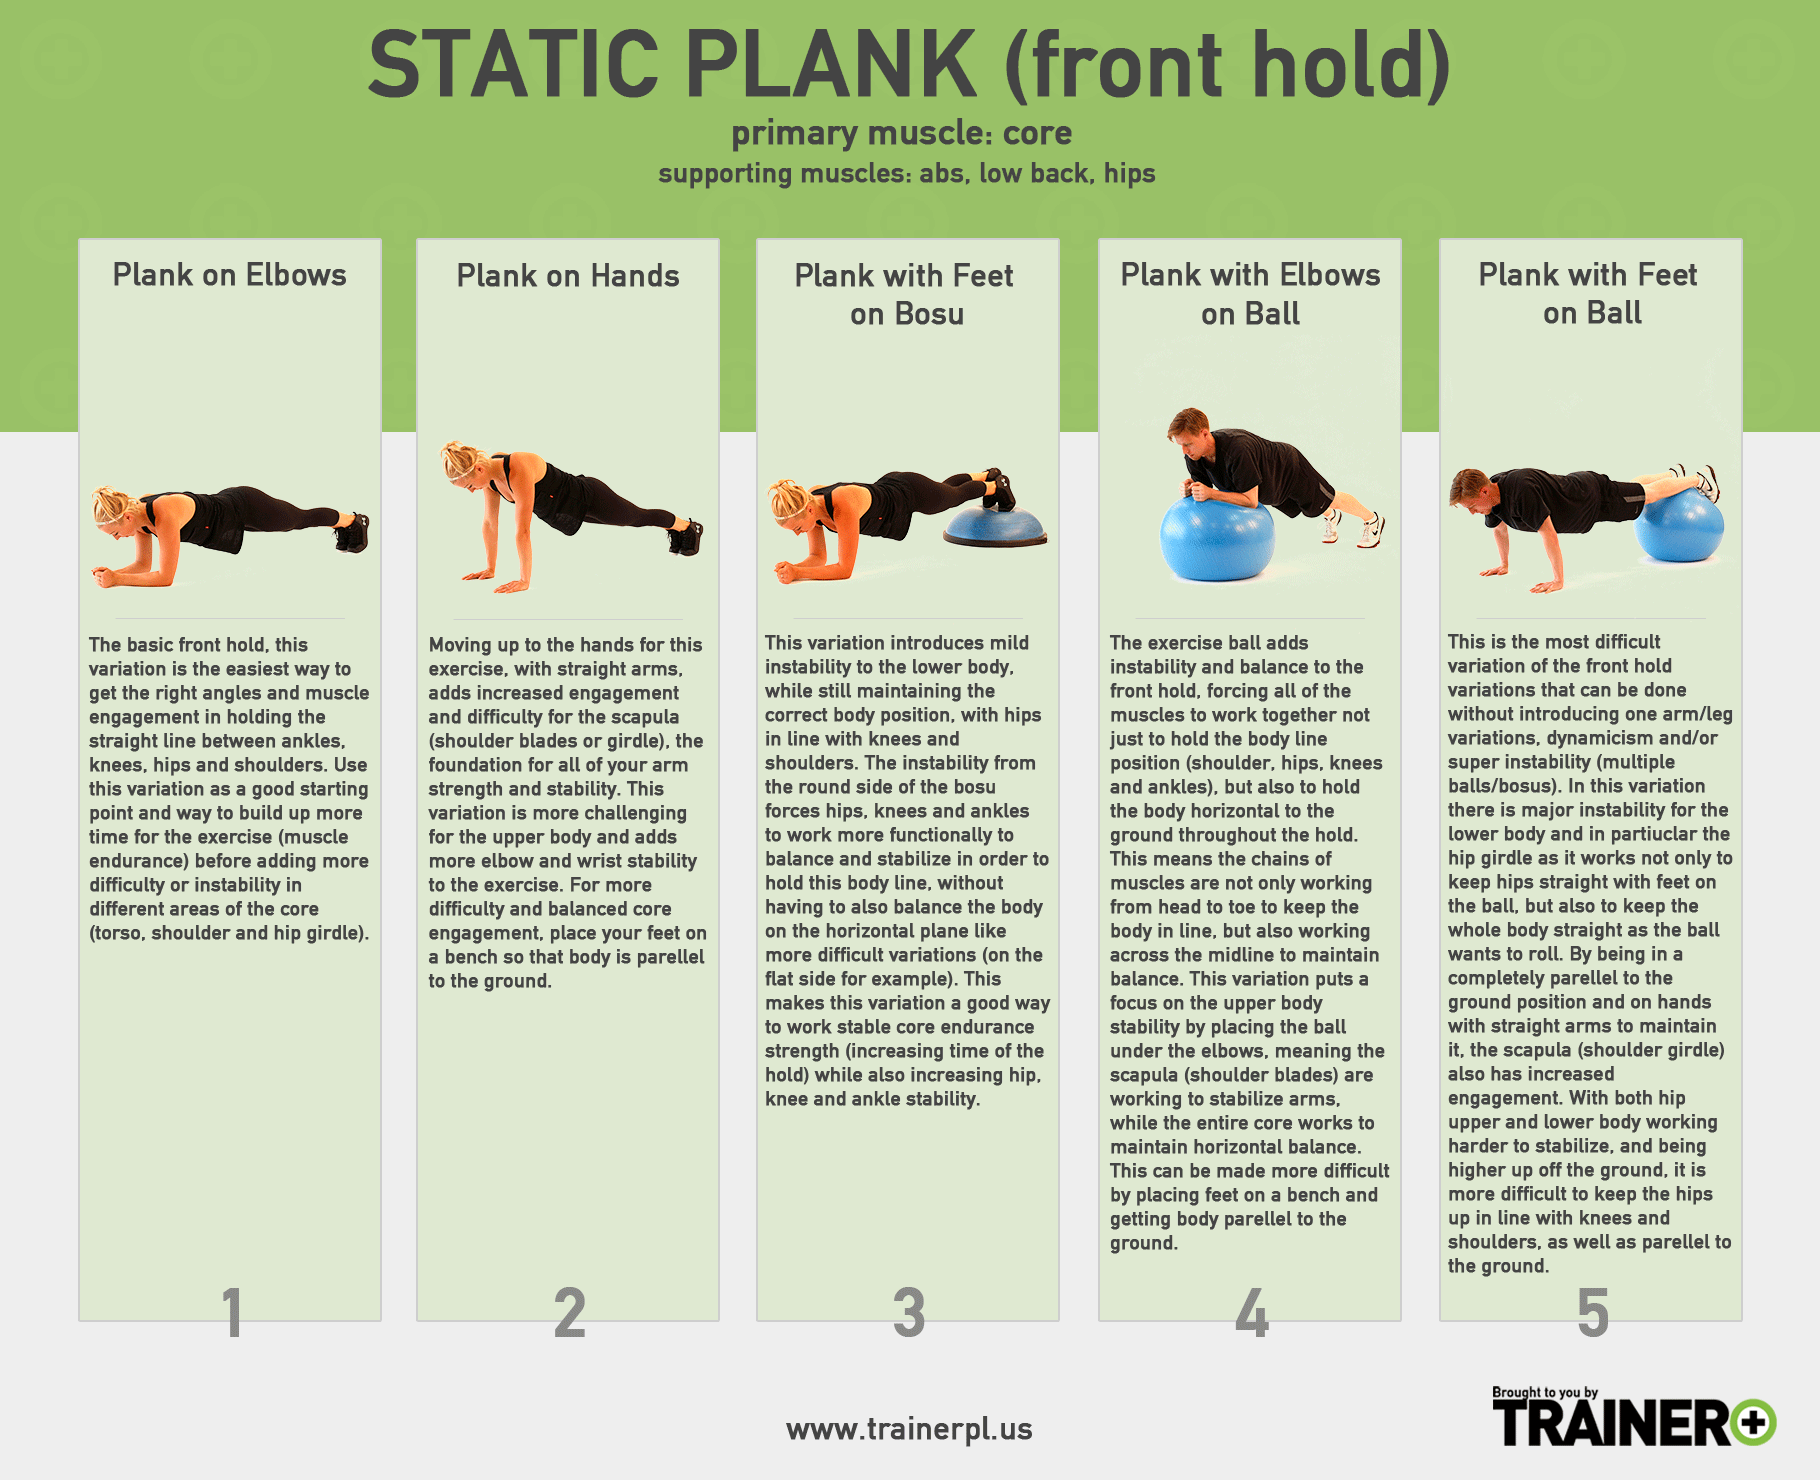 struik bedelaar microscoop Static Planks — Trainer Plus